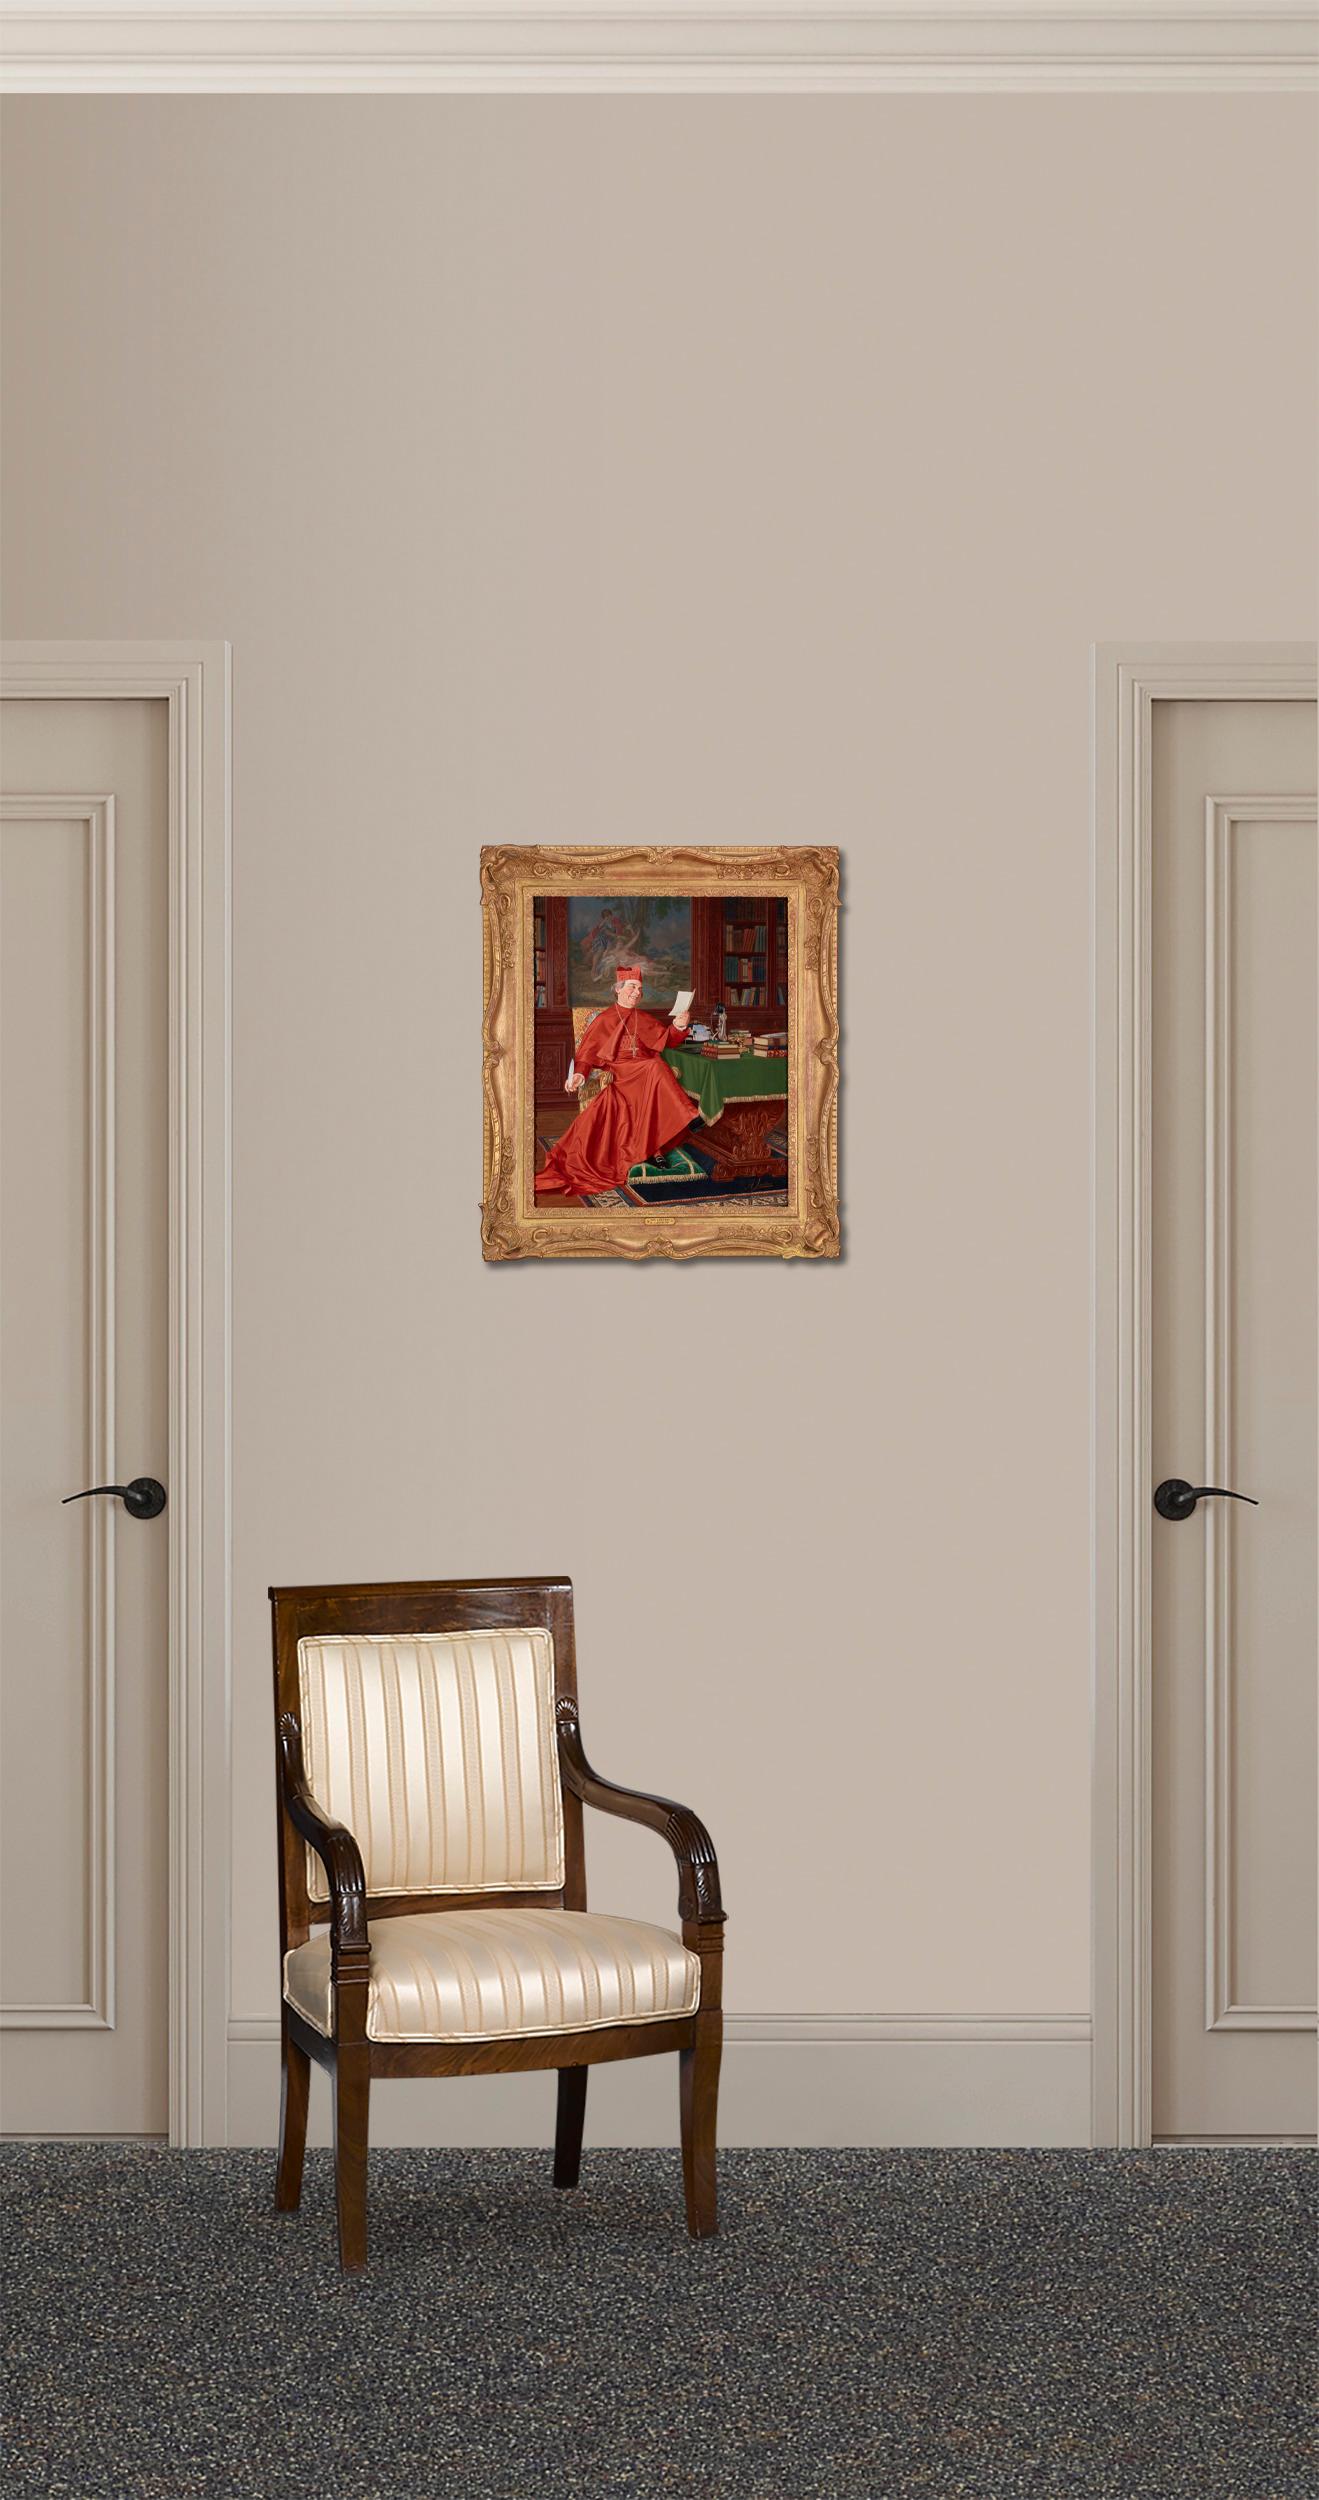 Un cardinal en robe rouge rit de la lettre qu'il tient dans sa main dans cette huile sur toile du peintre italien Andrea Landini. Cette pièce aux couleurs vives illustre le génie de l'artiste pour rendre des récits charmants avec des détails